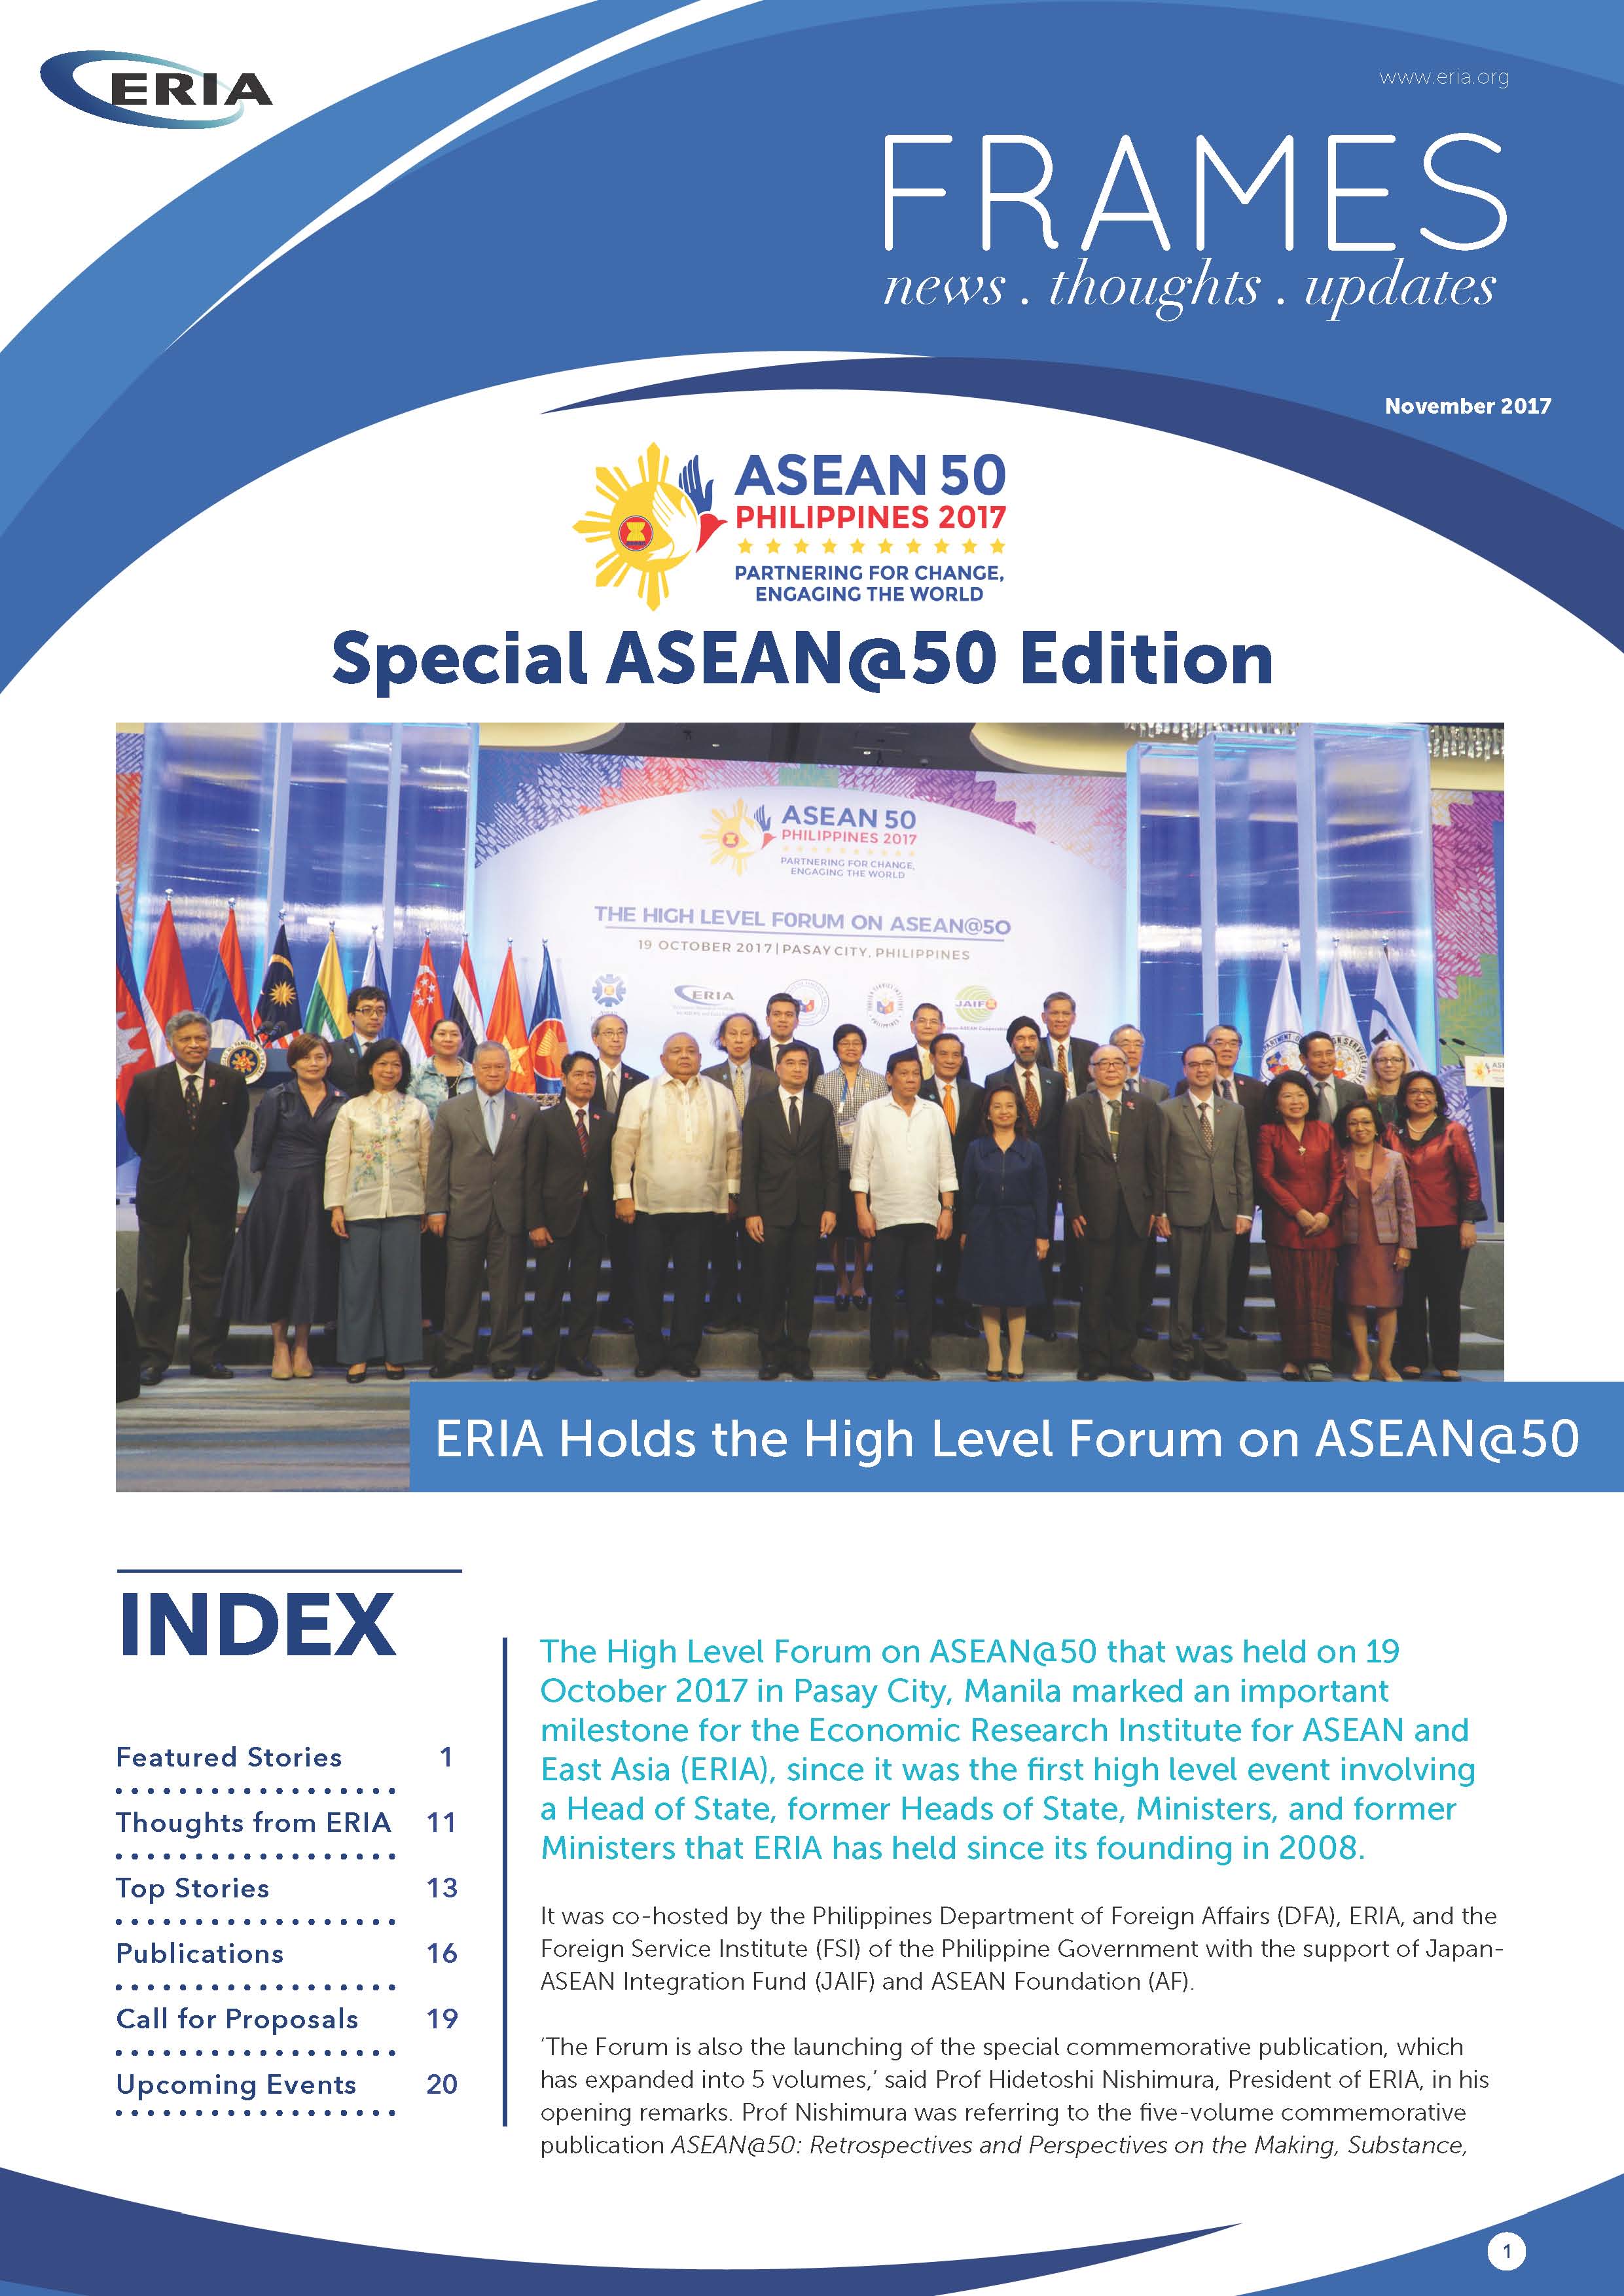 ERIA FRAMES : ASEAN@50 Edition | November 2017